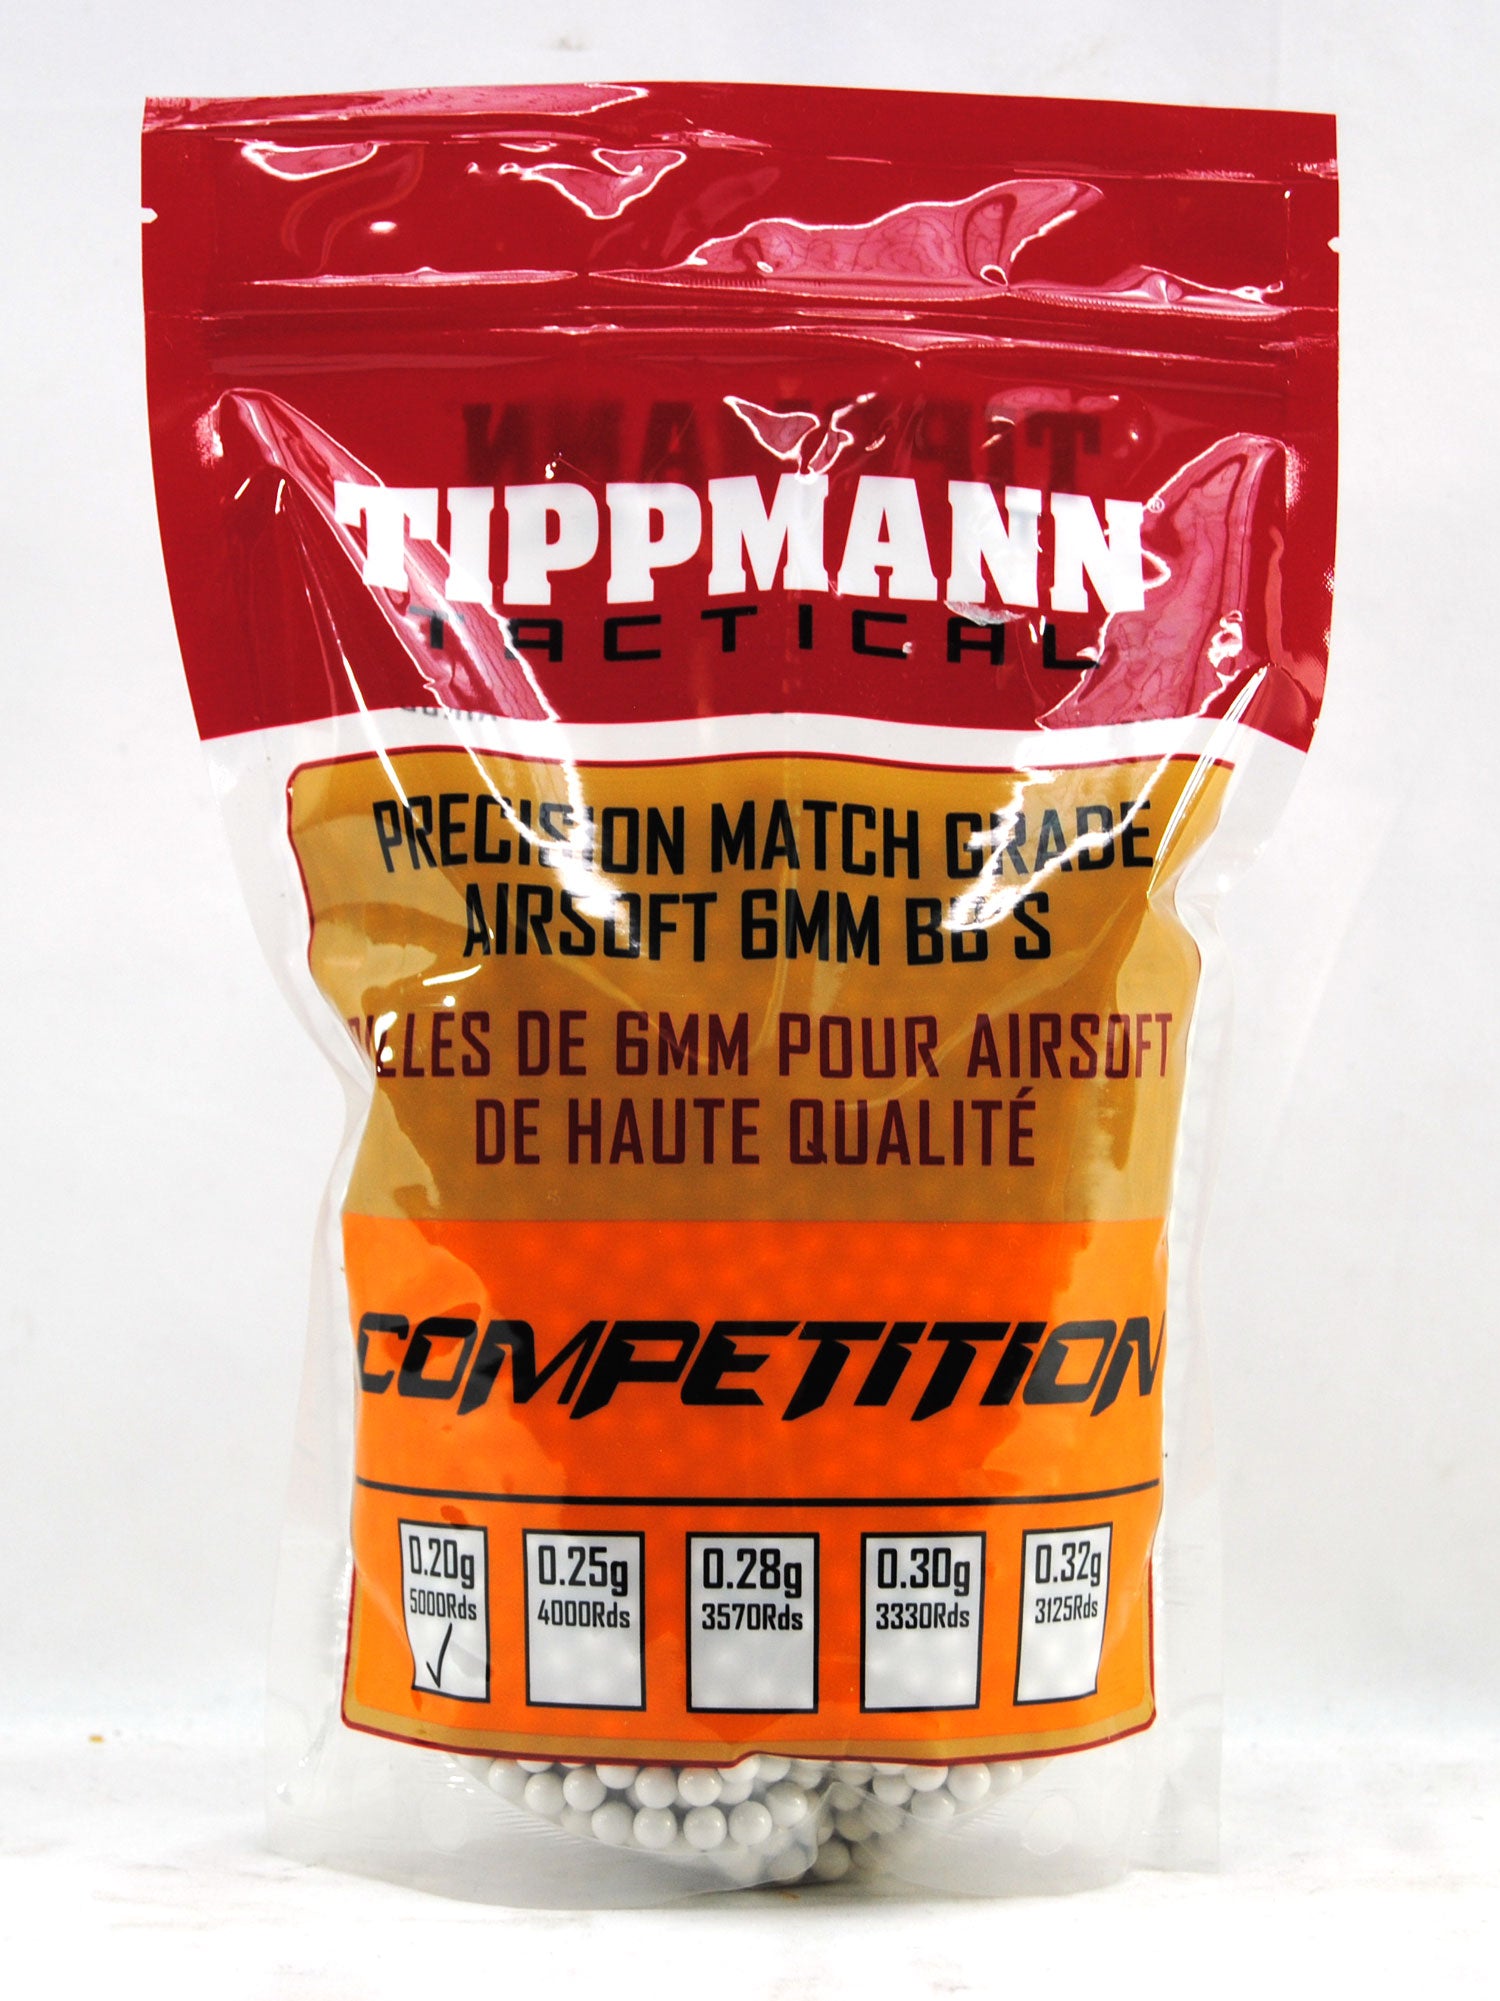 Tippmann Tactical Competition 6mm 1kg Bag (5000 BBs) - 0.20g - Tippmann Sports